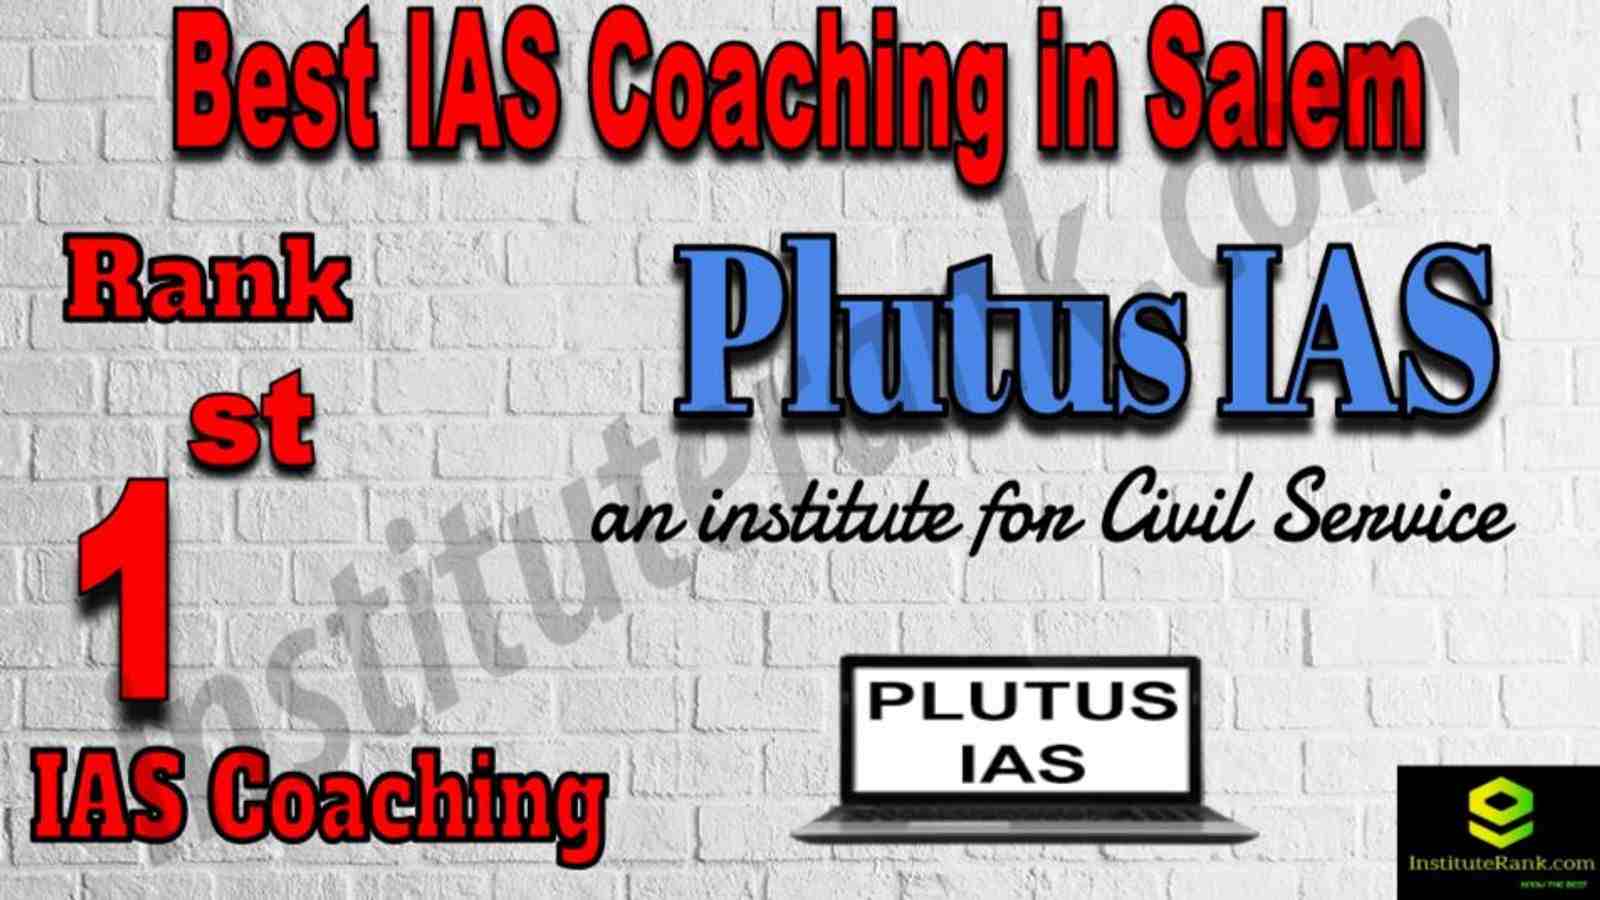 1st Best IAS Coaching in Salem